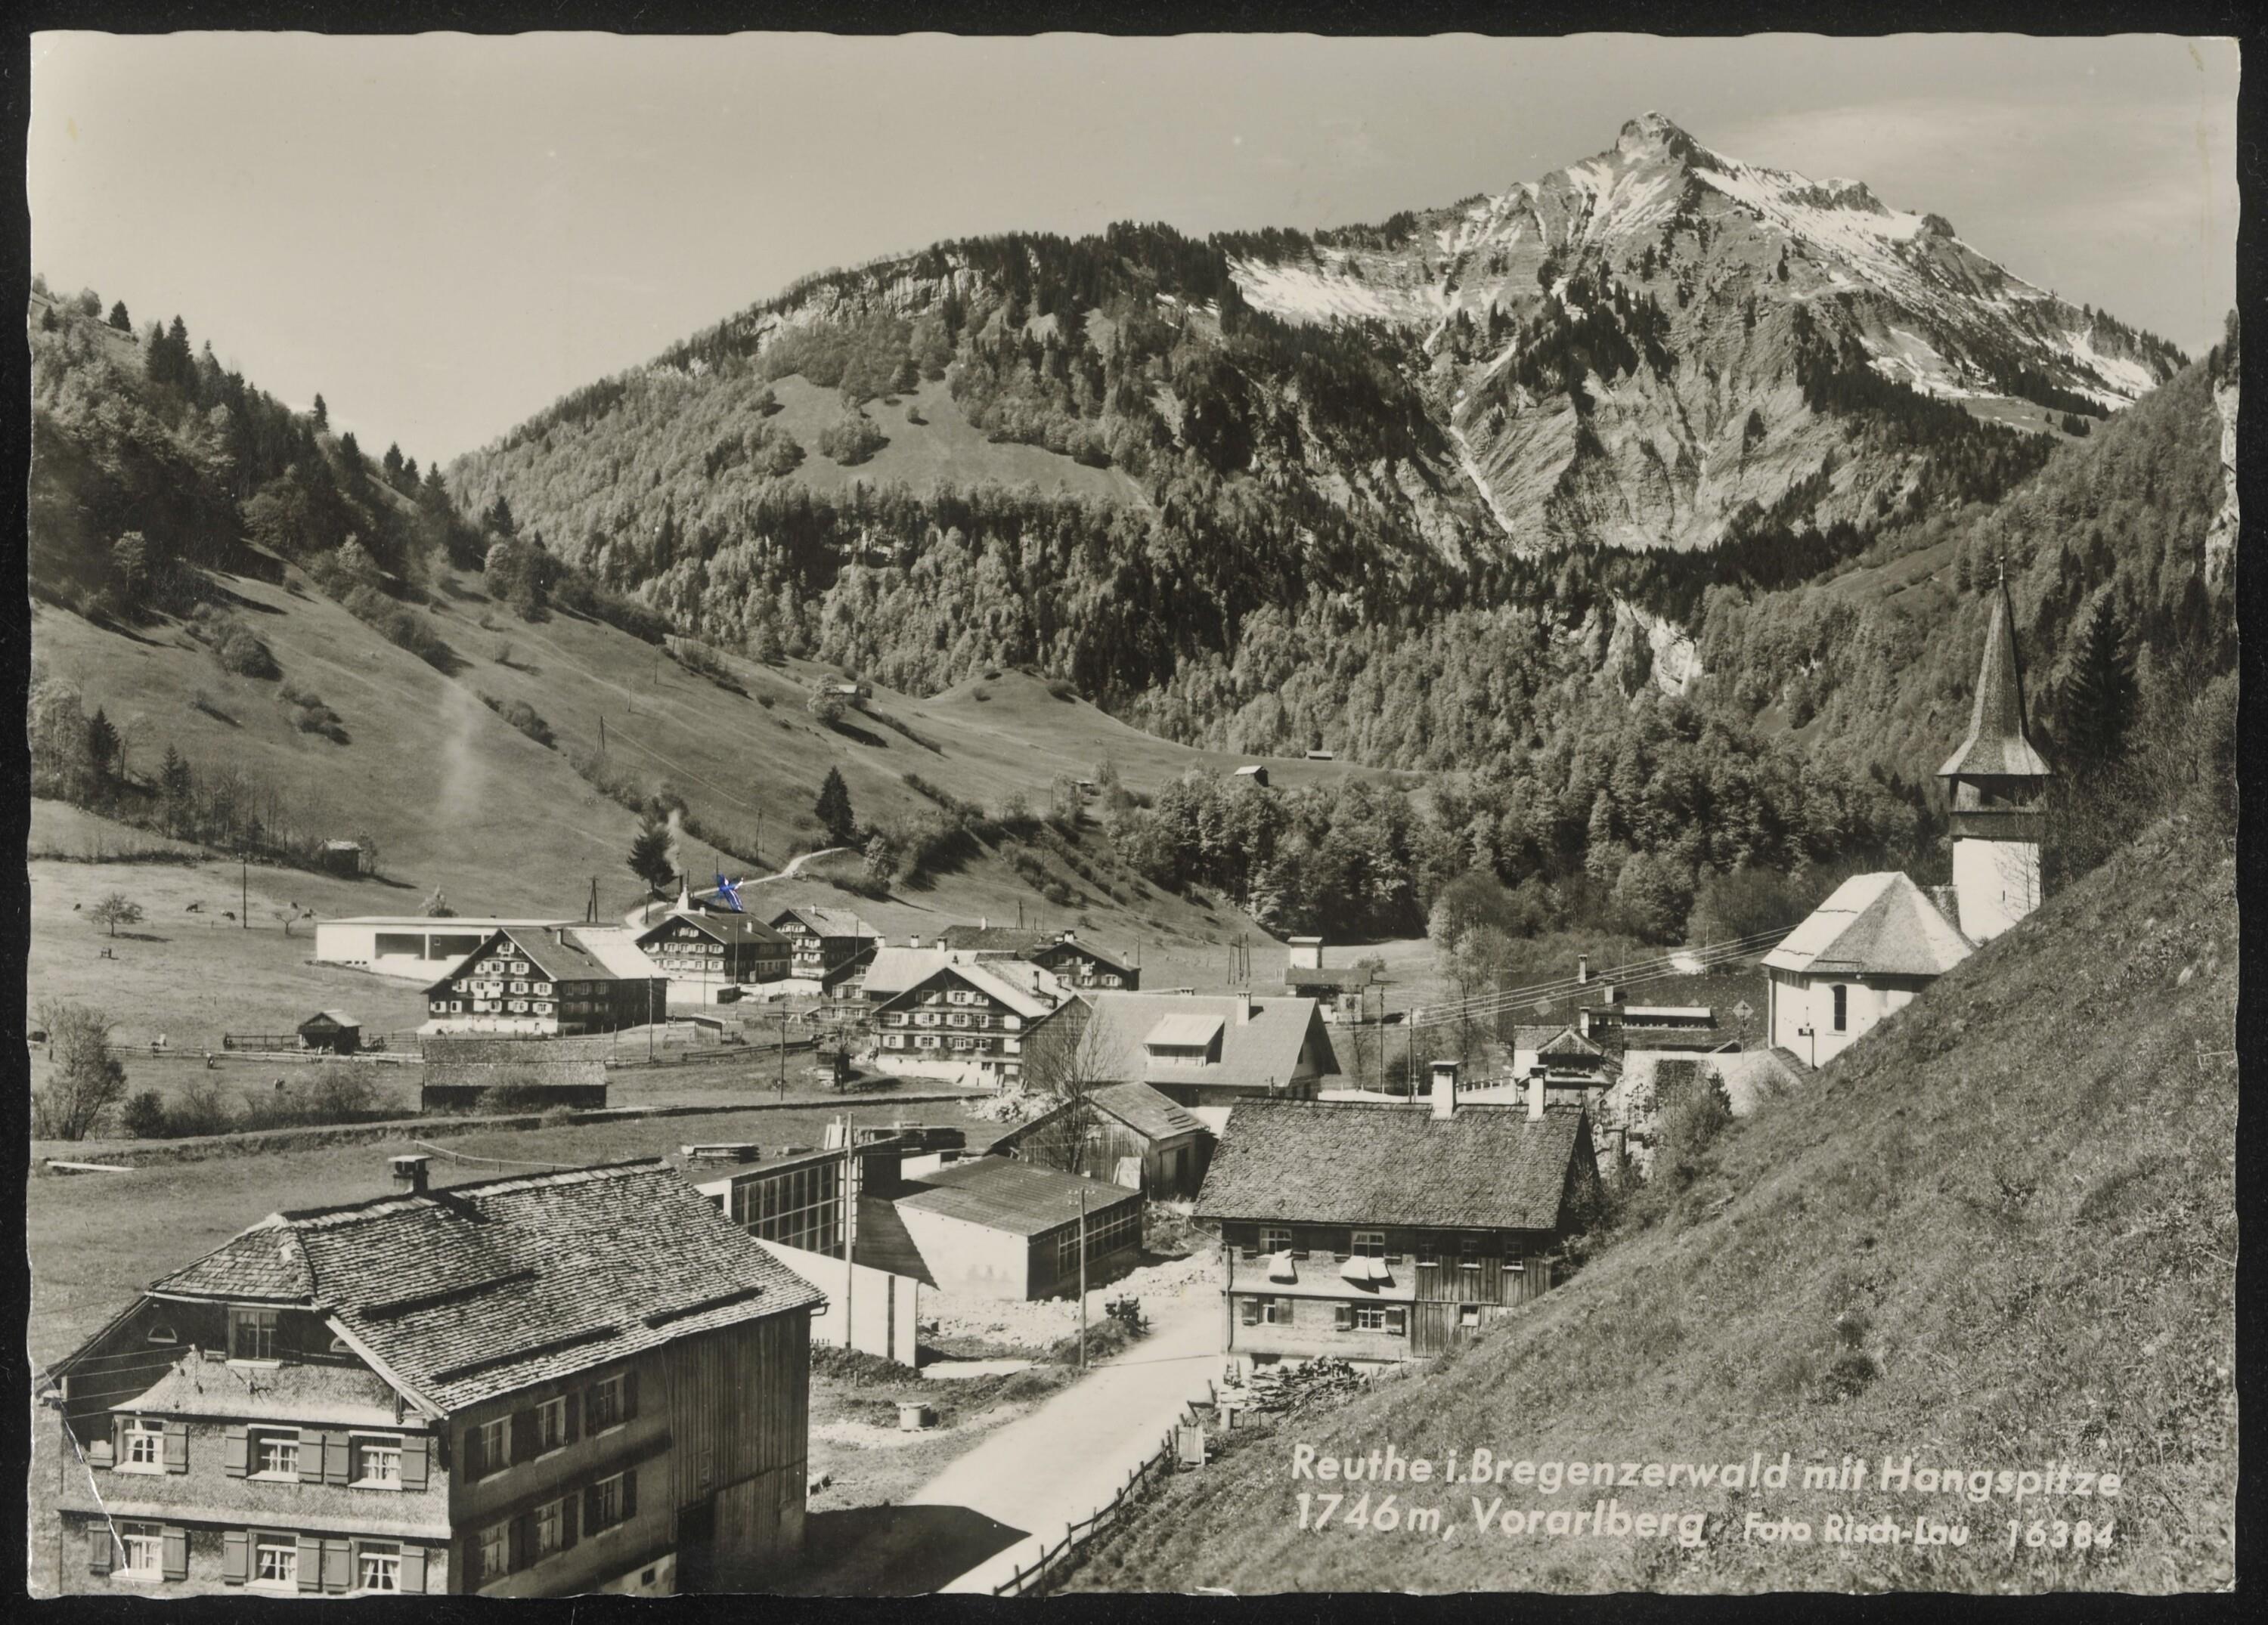 Reuthe i. Bregenzerwald mit Hangspitze 1746 m, Vorarlberg></div>


    <hr>
    <div class=